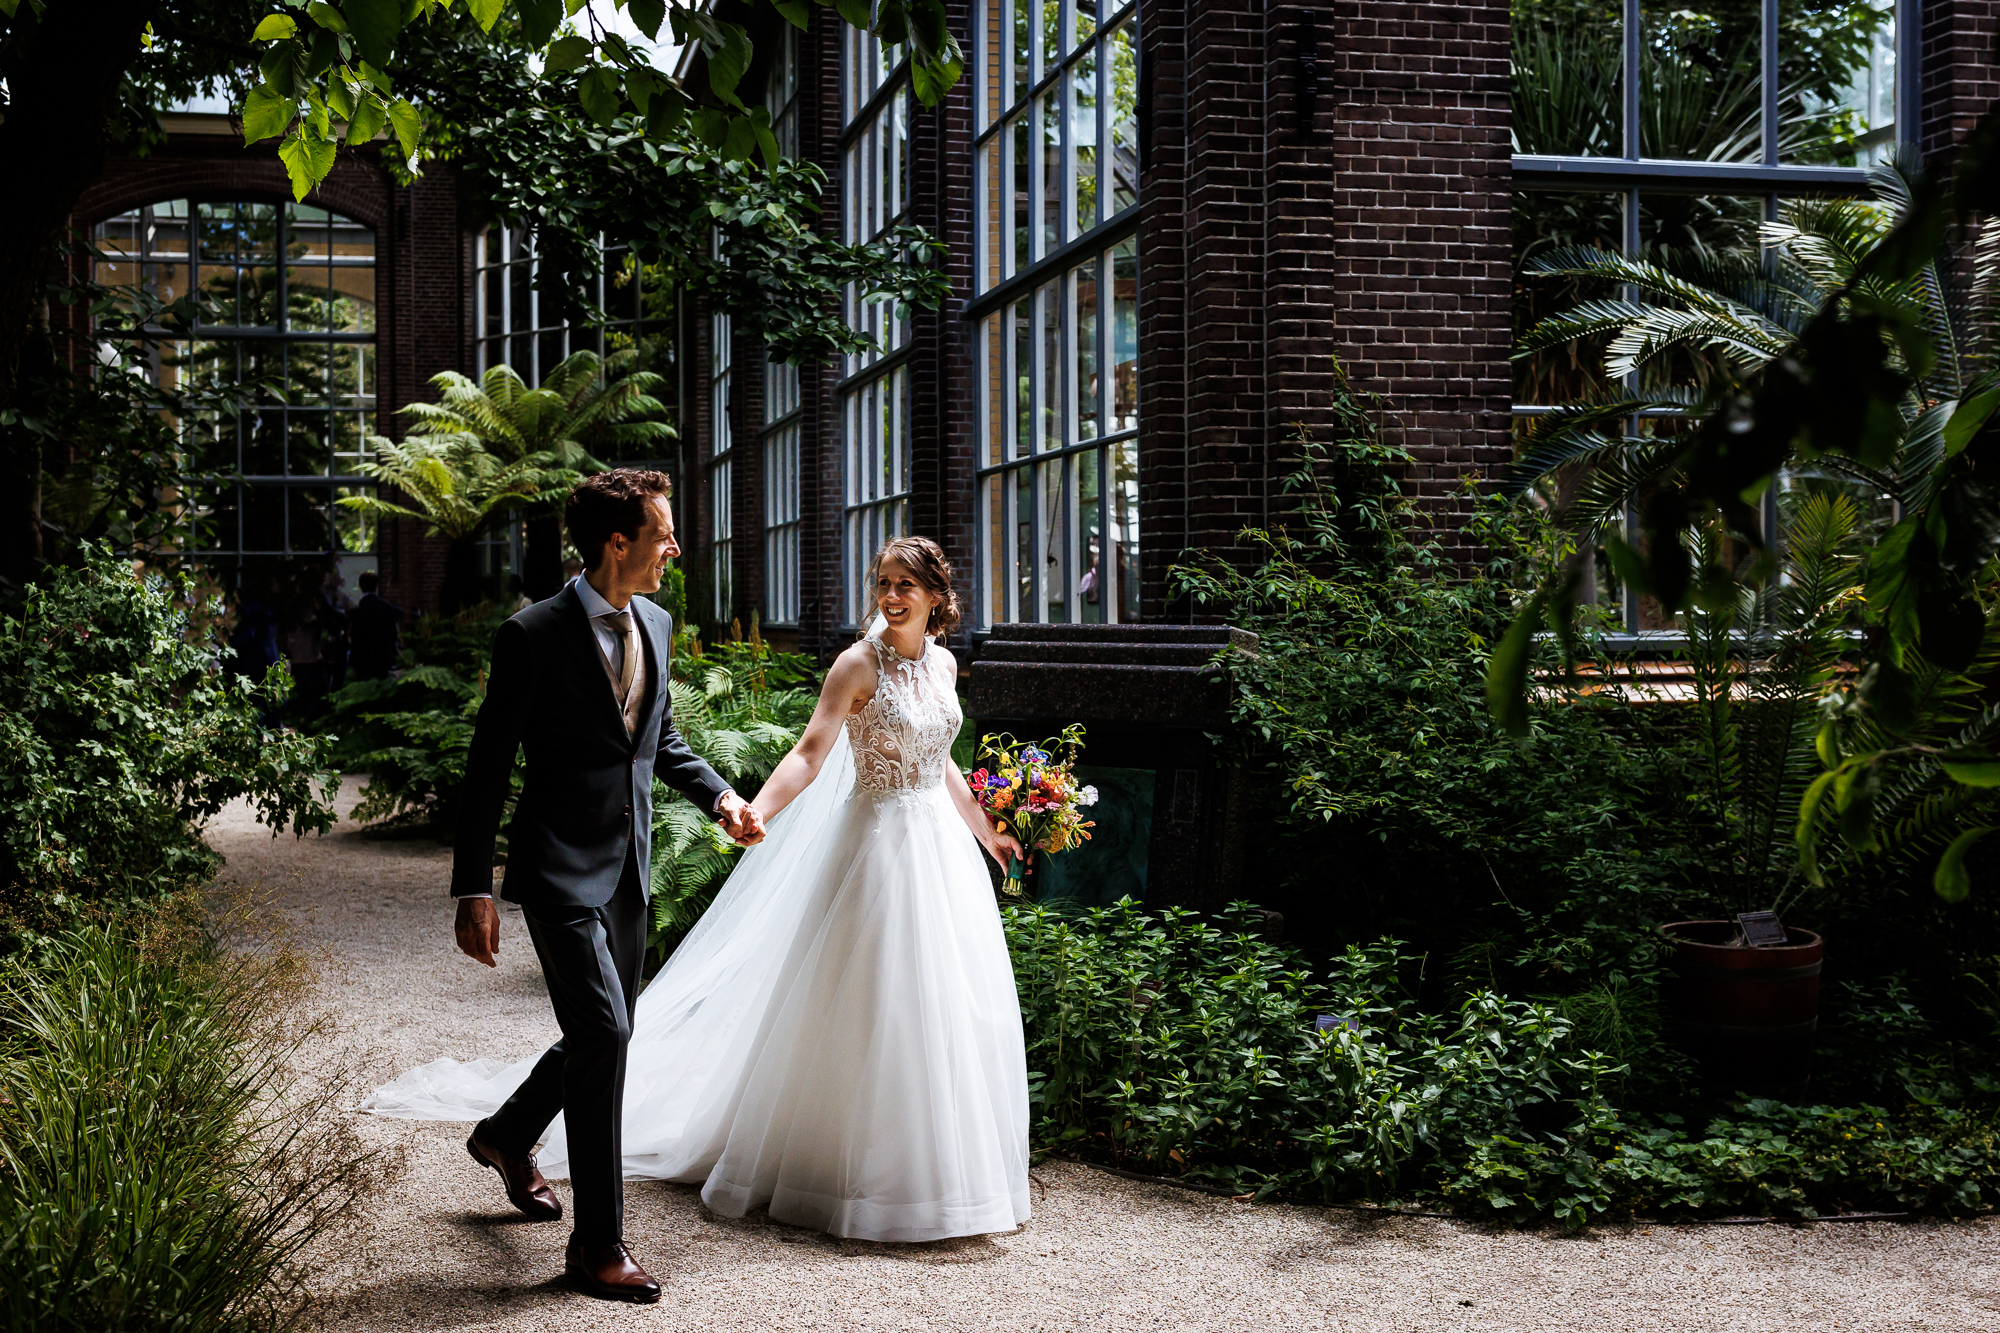 Trouwen bij de Hortus in Amsterdam | Amsterdam wedding venue | Trouwen in een kas